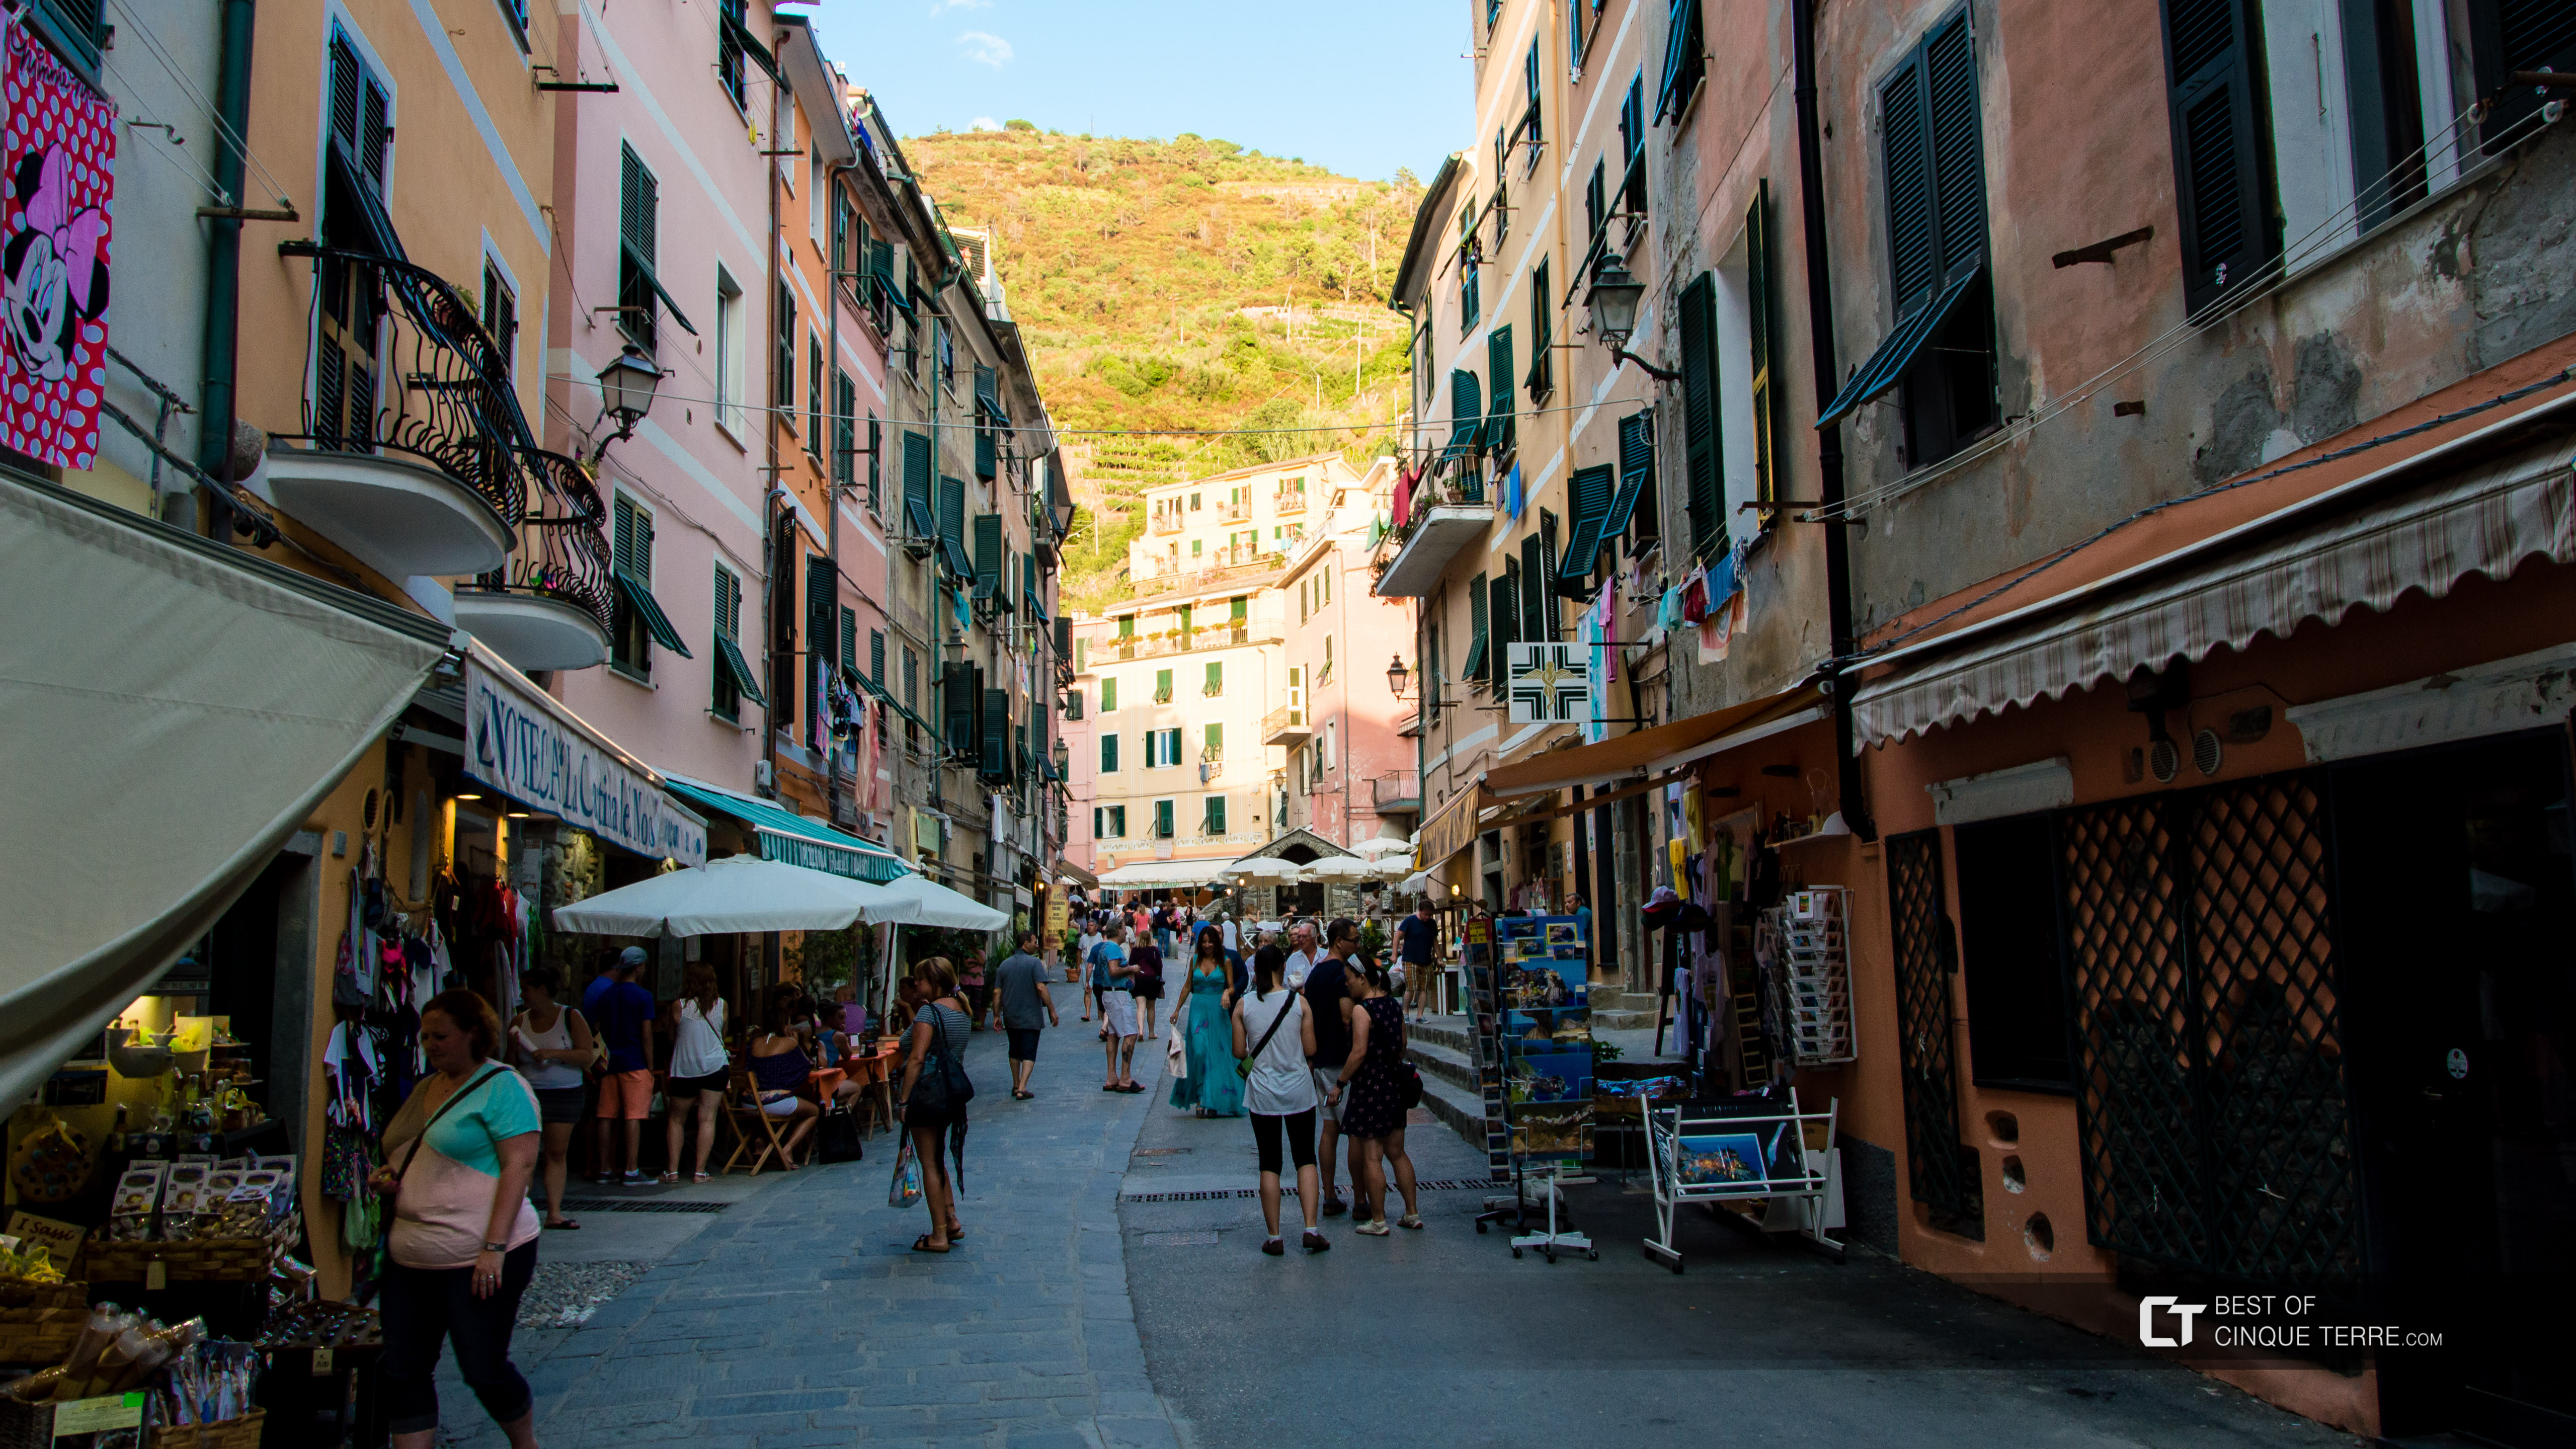 Paseo por la calle principal, Vernazza, Cinque Terre, Italia